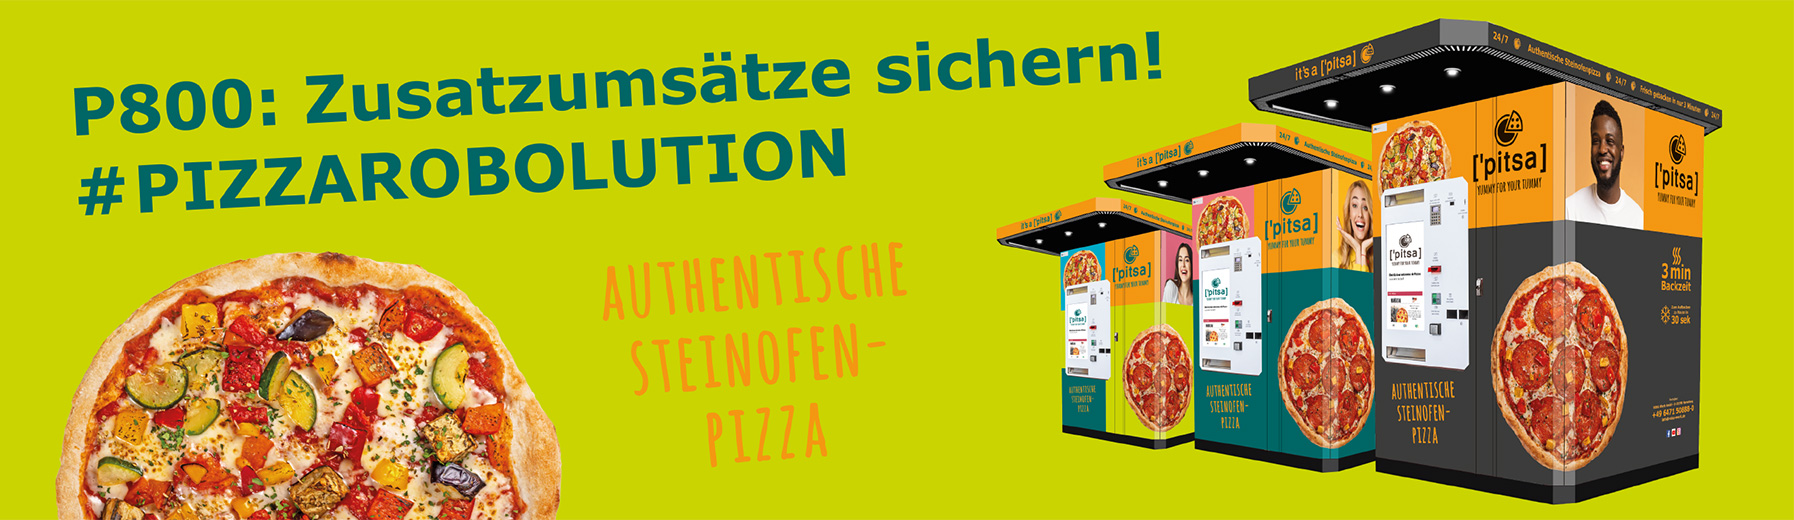 pitsa - Das modulare und autarke Pizza Konzept